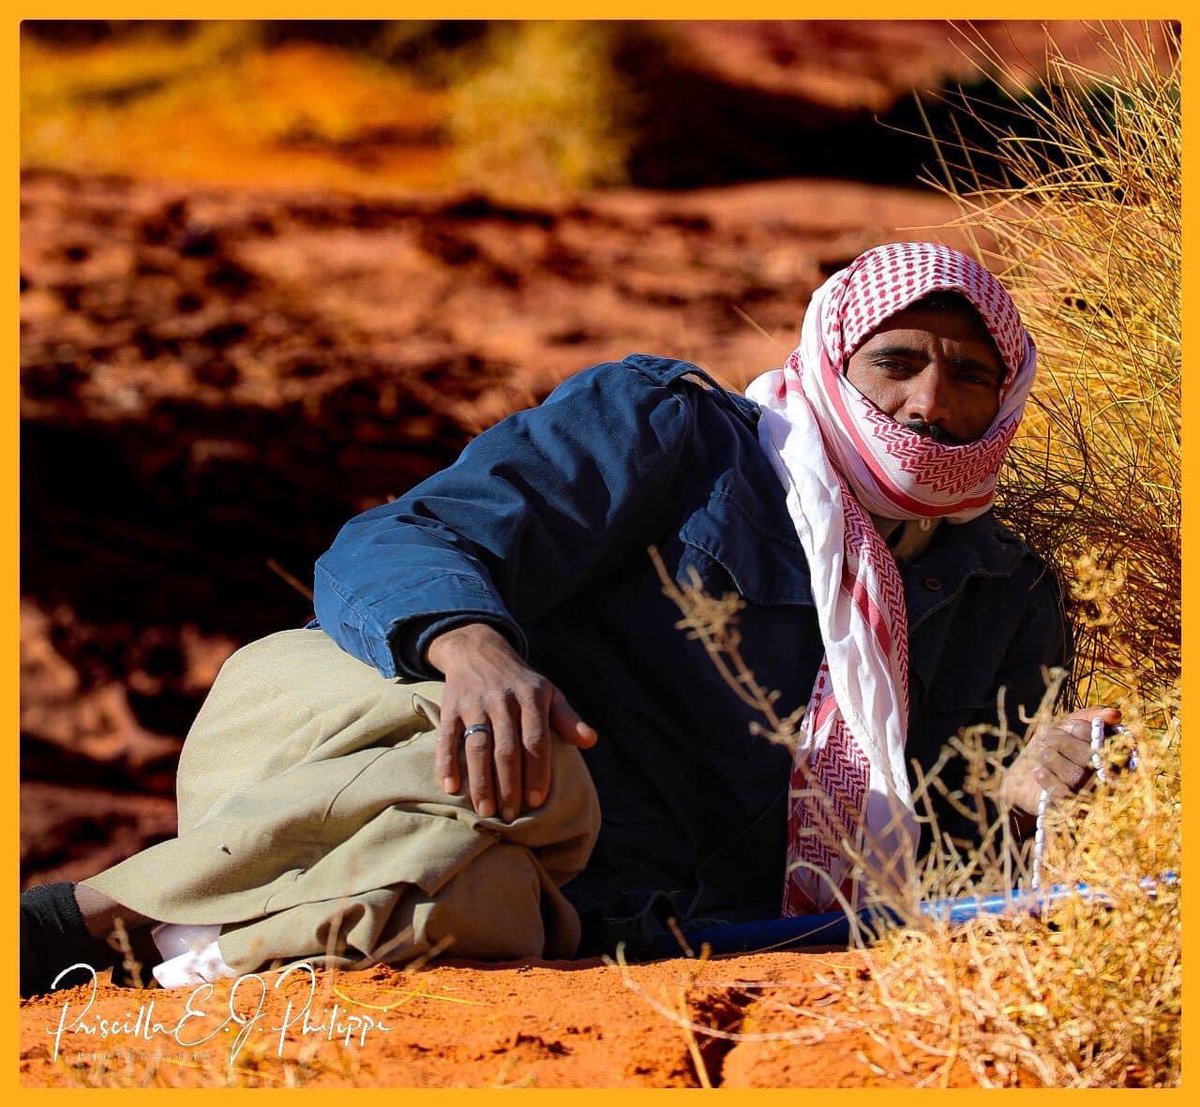 #bedouin of #WadiRum taking a break & relaxing in the #desert #natgeoyourshot #natgeotravel #natgeophotography #natgeo #natgeomagazine #natgeousa #natgeoyourshotphotographer #natgeoadventure #natgeohub #natgeotravelpic #natgeofineart  #natgeography #momentonatgeo #natgeotraveller